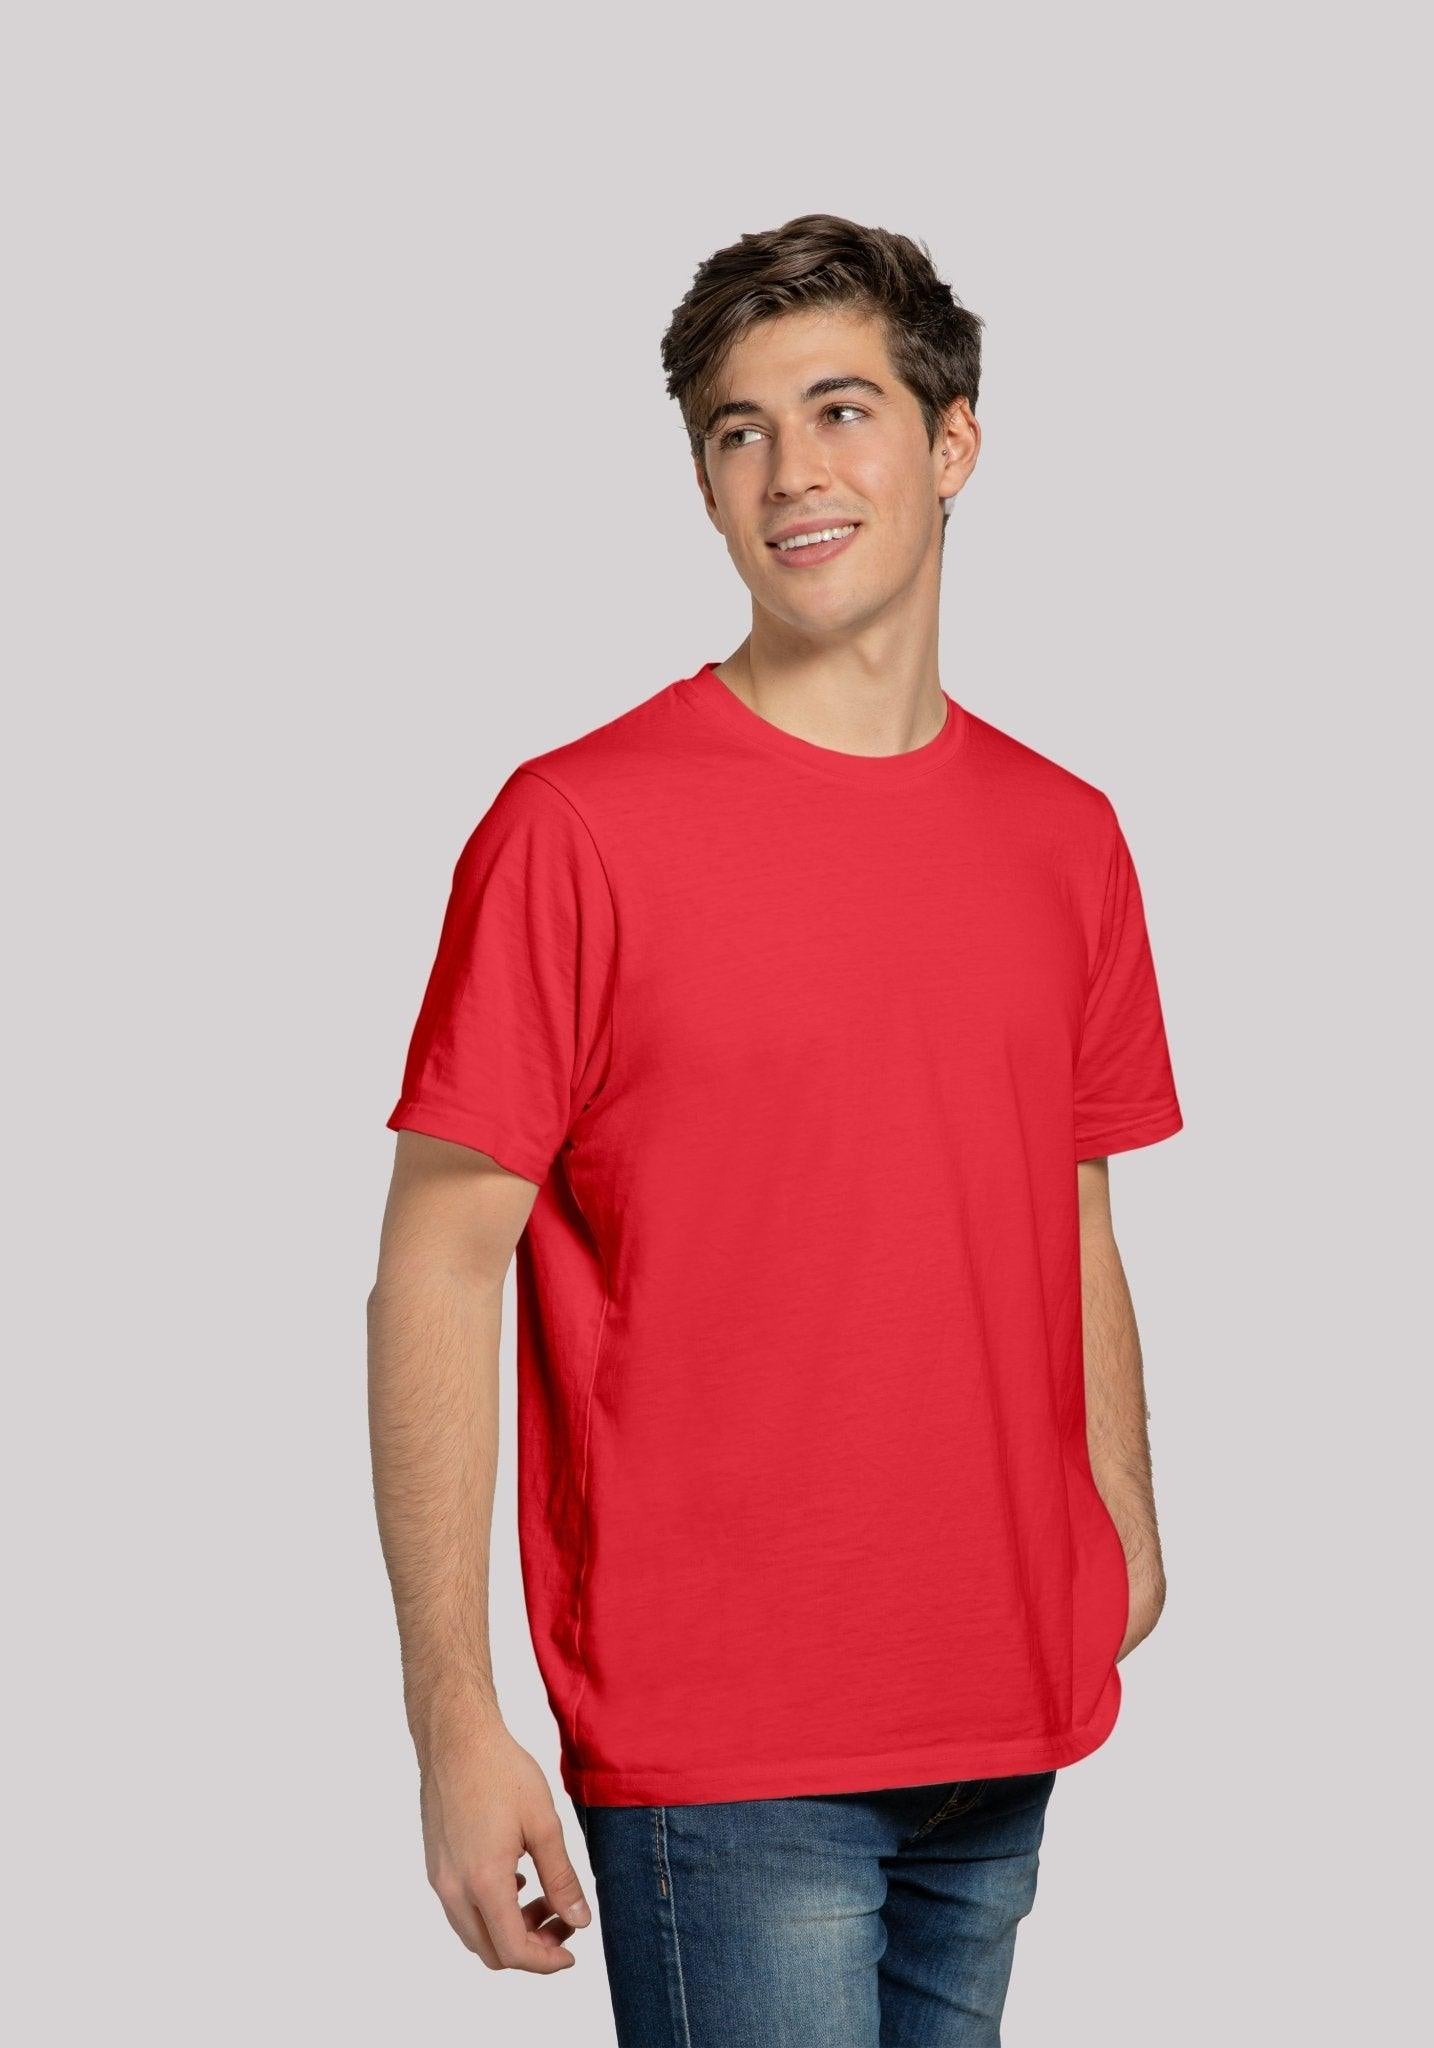 Solid Plain T Shirt Combo For Men In Crimson RedColour Variant